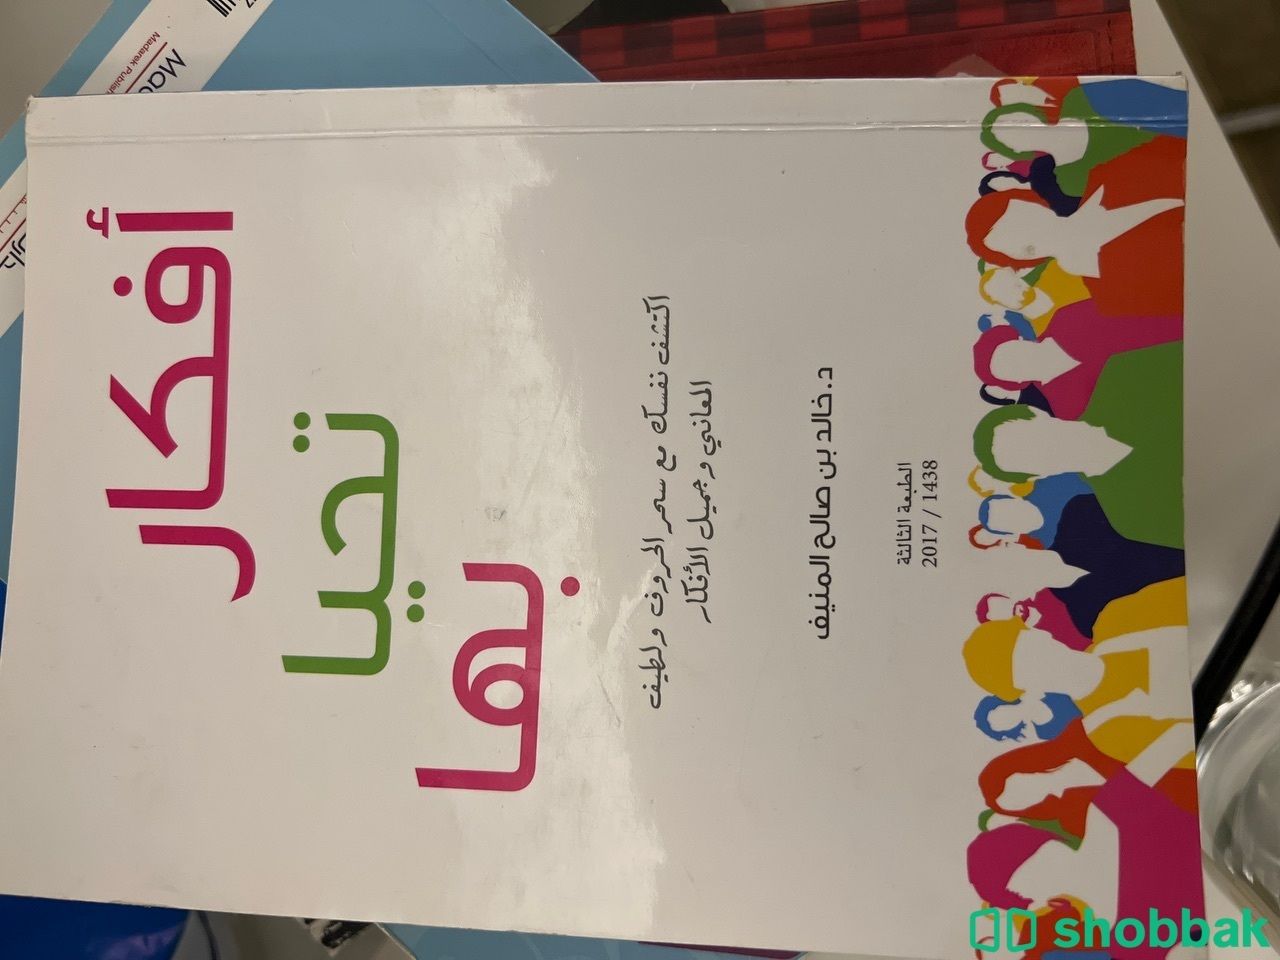 كتاب أفكار تحبا بها Shobbak Saudi Arabia